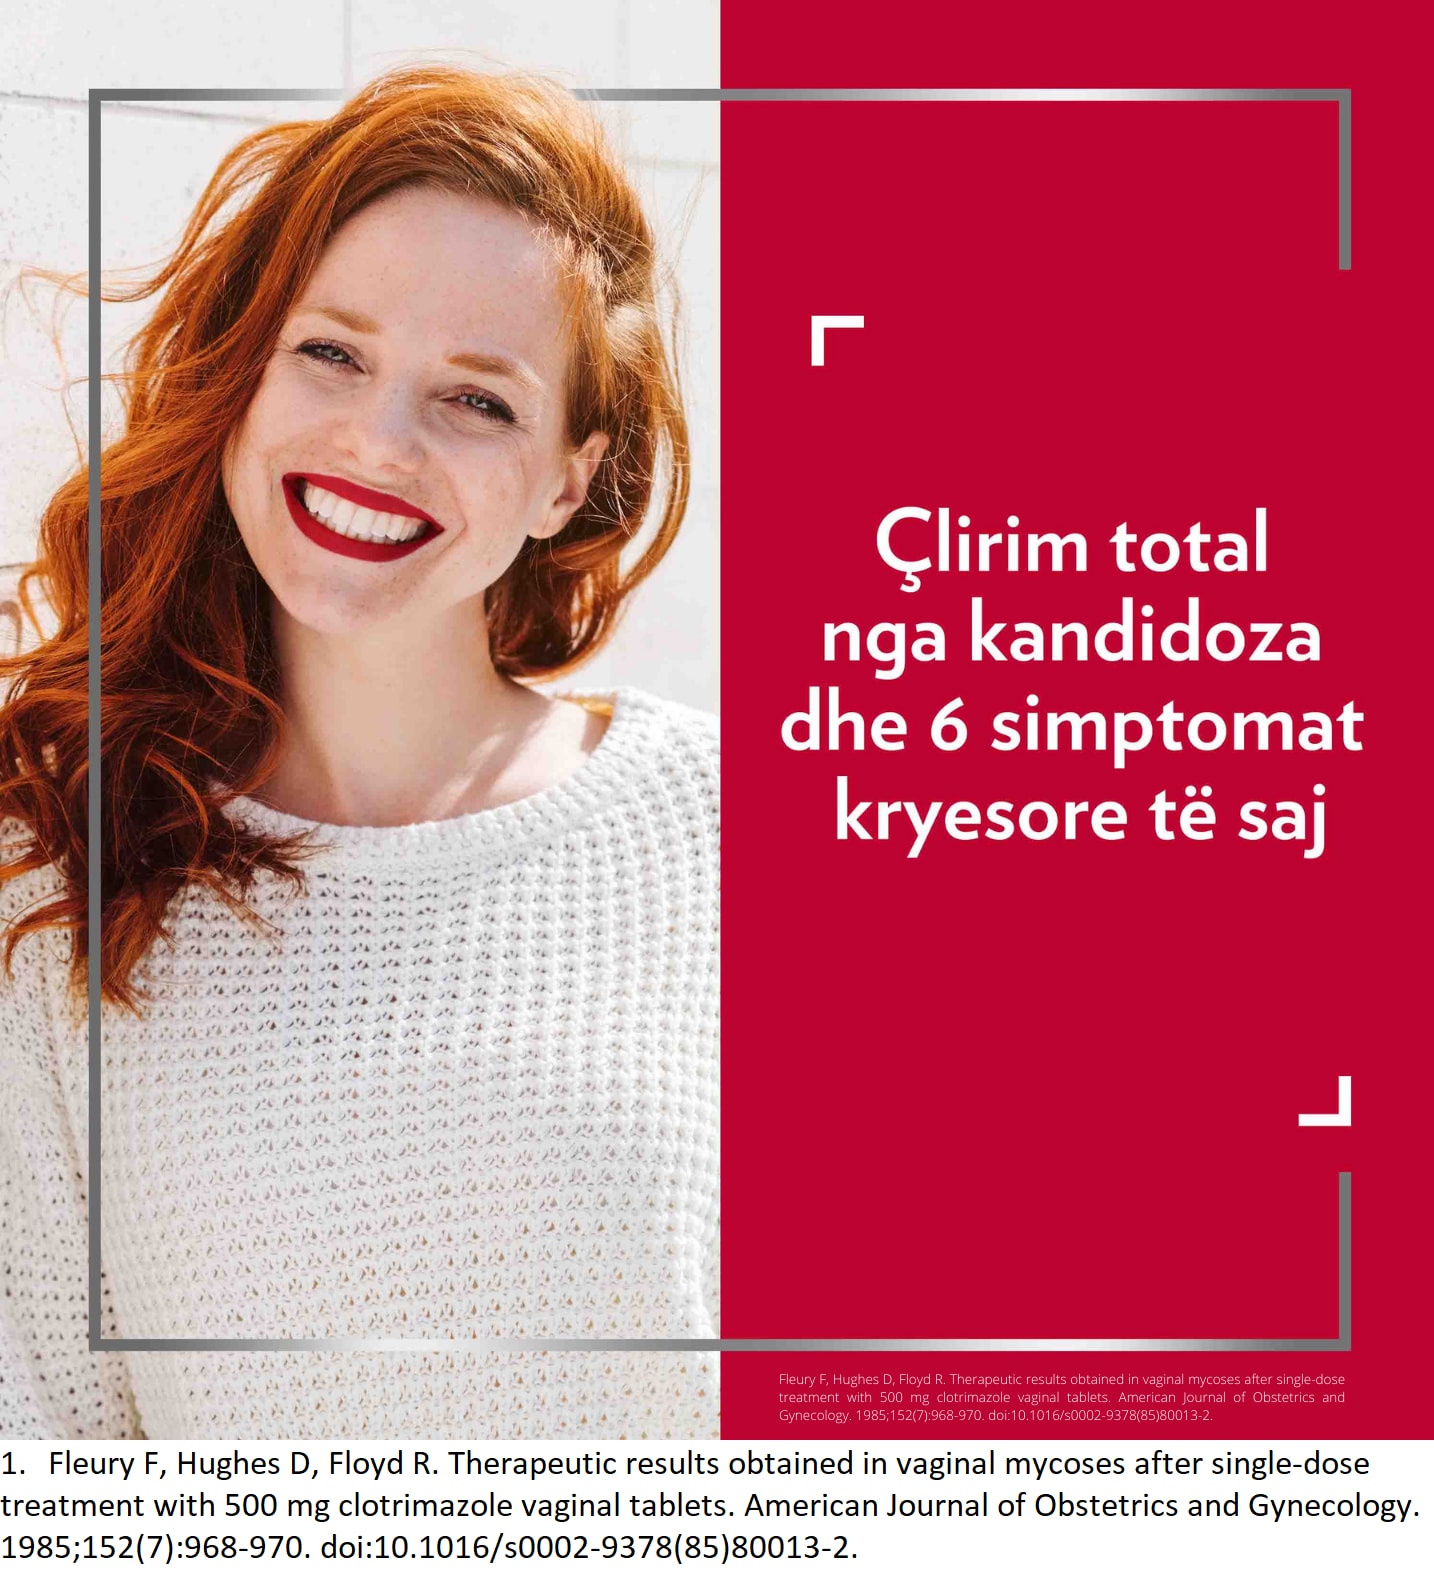 Një grua flokë-kuqe që buzëqesh, me titullin në anën e djathtë të figurës: Lehtësim efektiv nga kandidoza dhe 6 simptomat kryesore të saj1